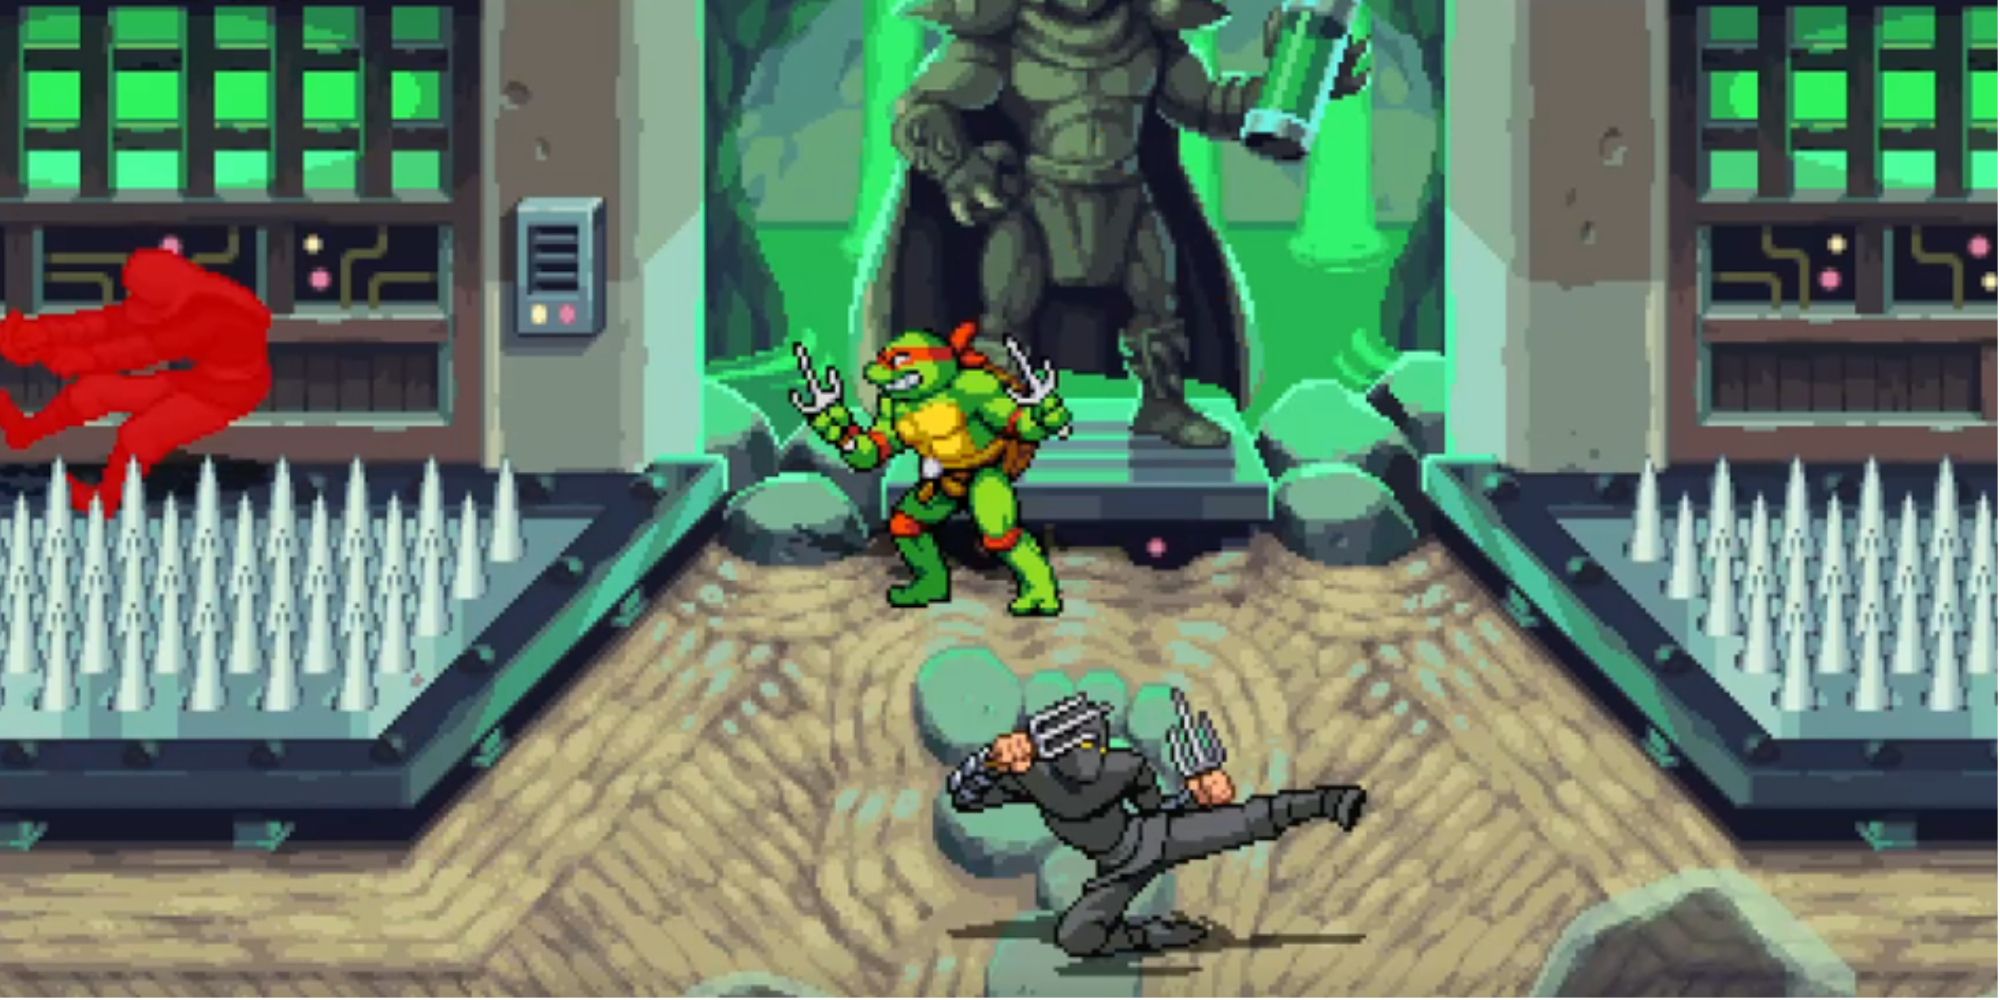 A Foot Ninja taking damage on a spiked floor in Teenage Mutant Ninja Turtles: Shredder's Revenge